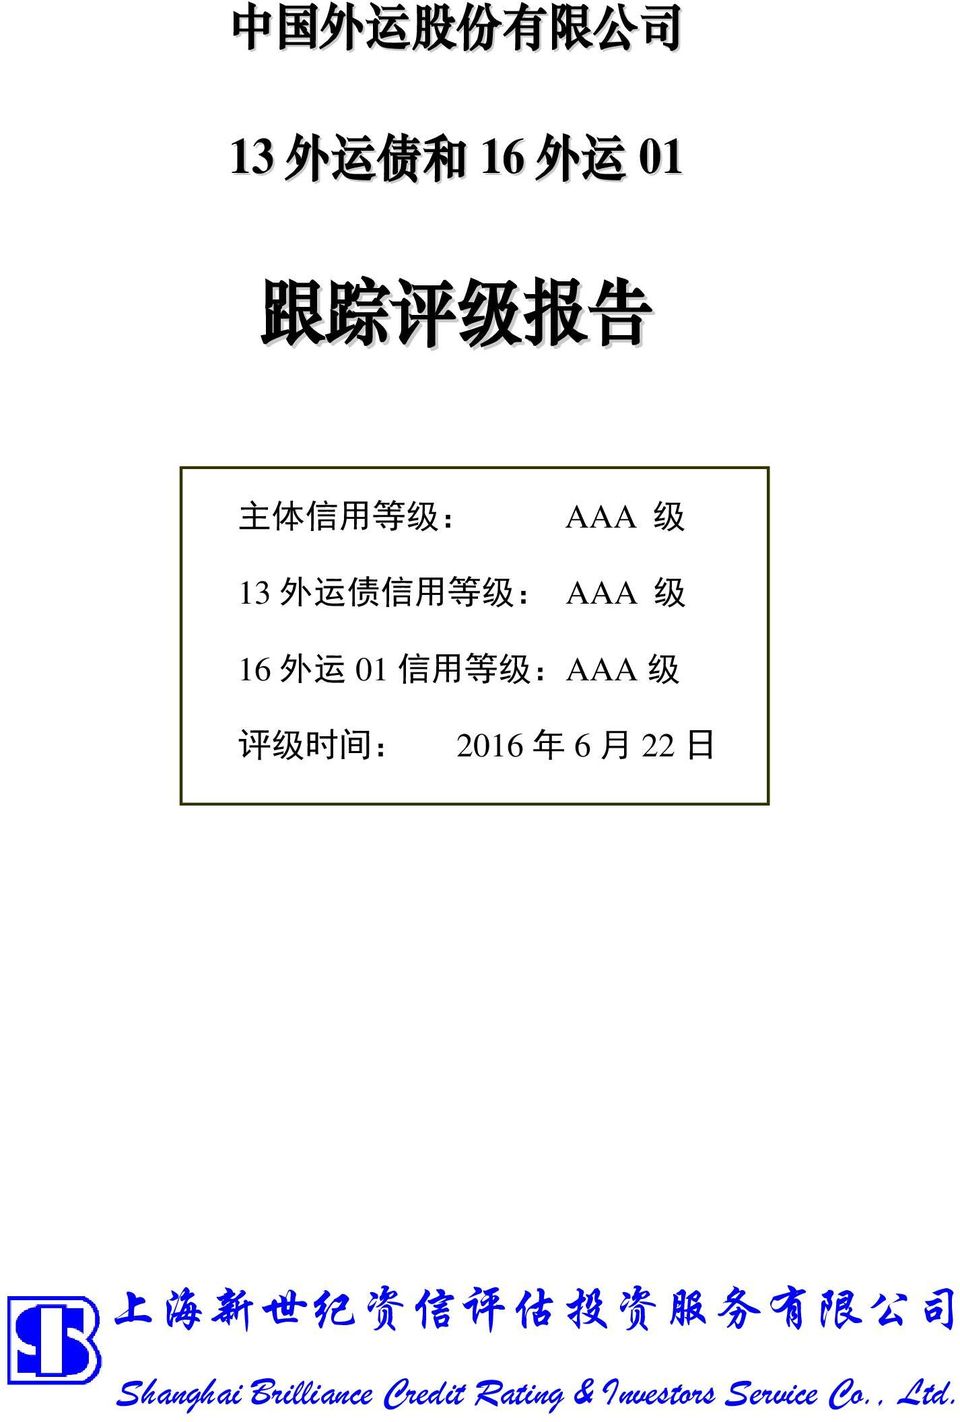 运 01 信 用 等 级 :AAA 级 评 级 时 间 : 2016 年 6 月 22 日 上 海 新 世 纪 资 信 评 估 投 资 服 务